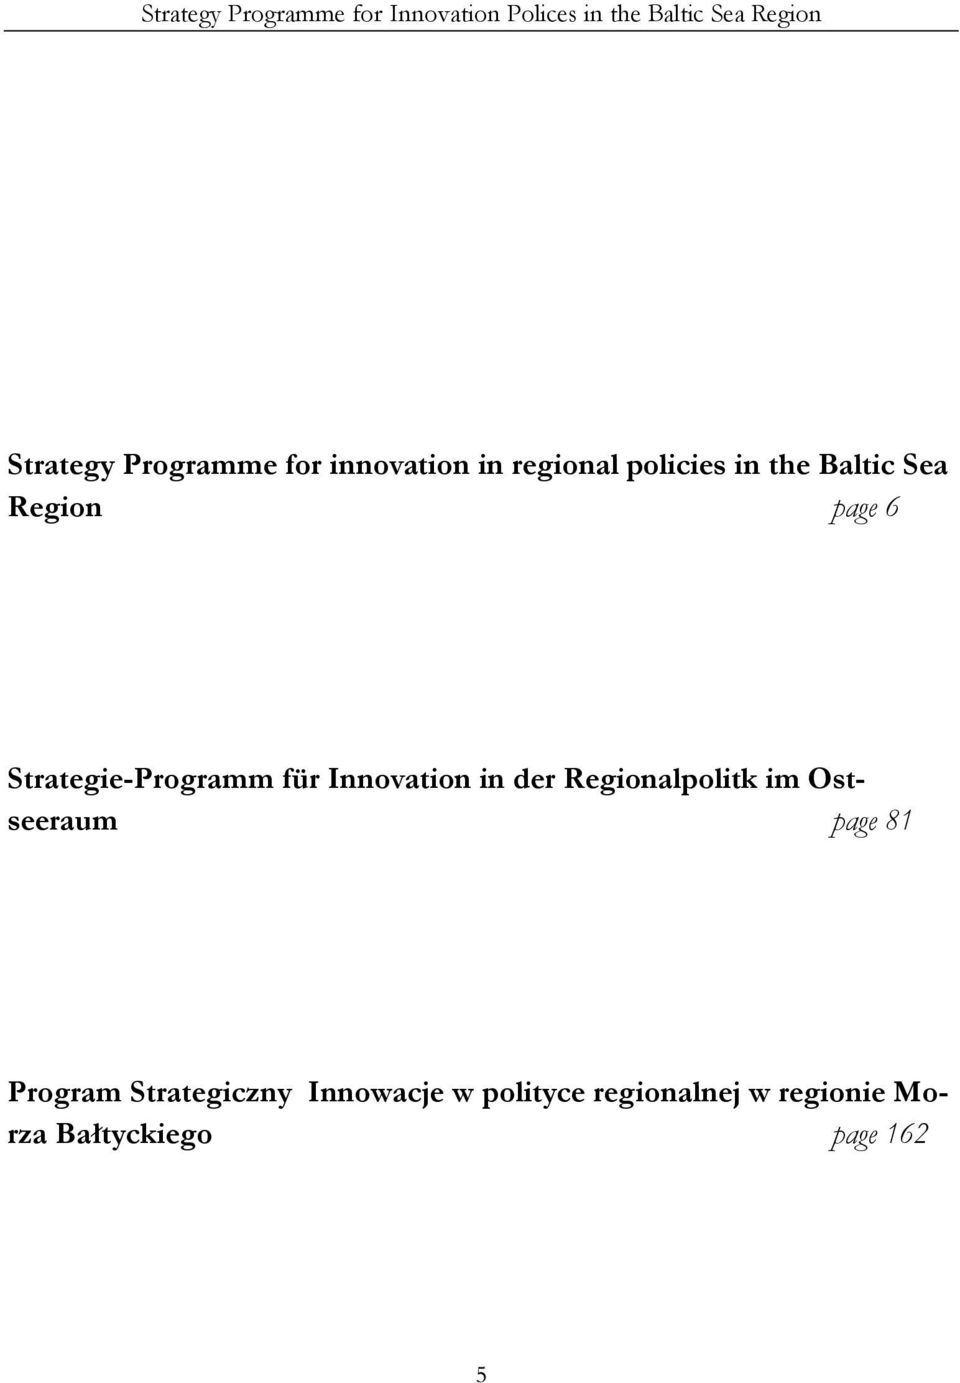 Strategie-Programm für Innovation in der Regionalpolitk im Ostseeraum page 81